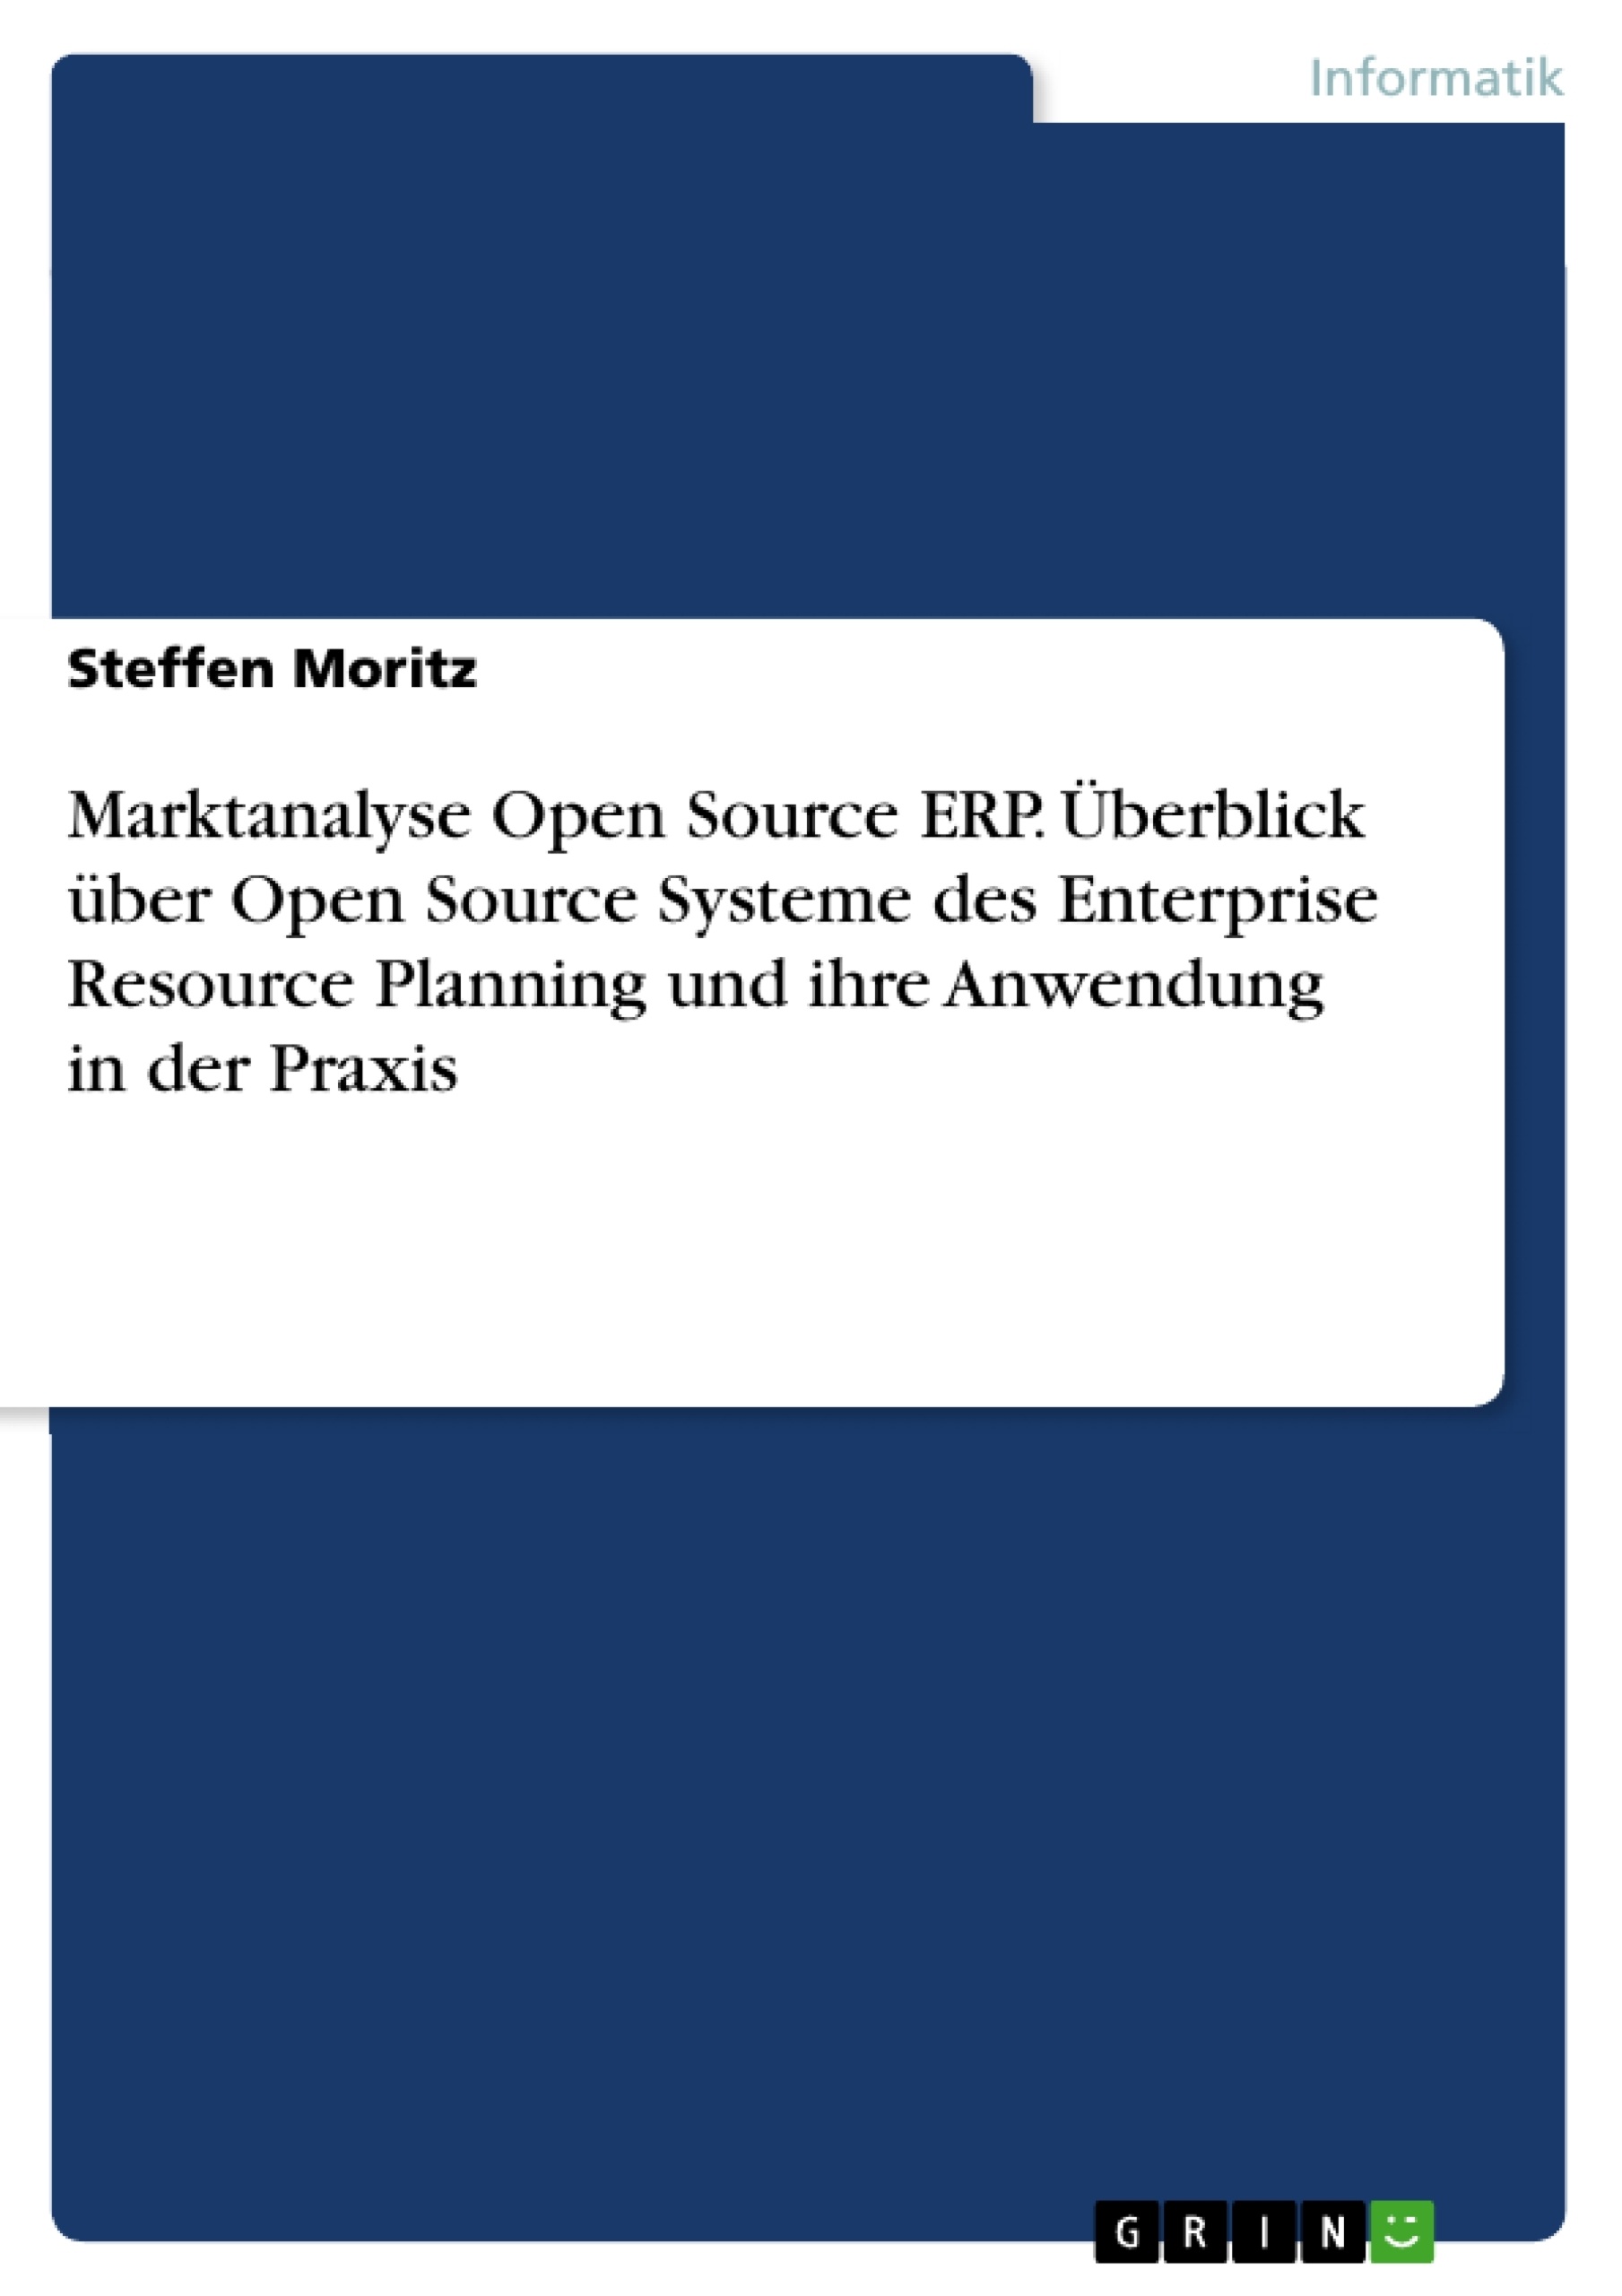 Title: Marktanalyse Open Source ERP. Überblick über Open Source Systeme des Enterprise Resource Planning und ihre Anwendung in der Praxis